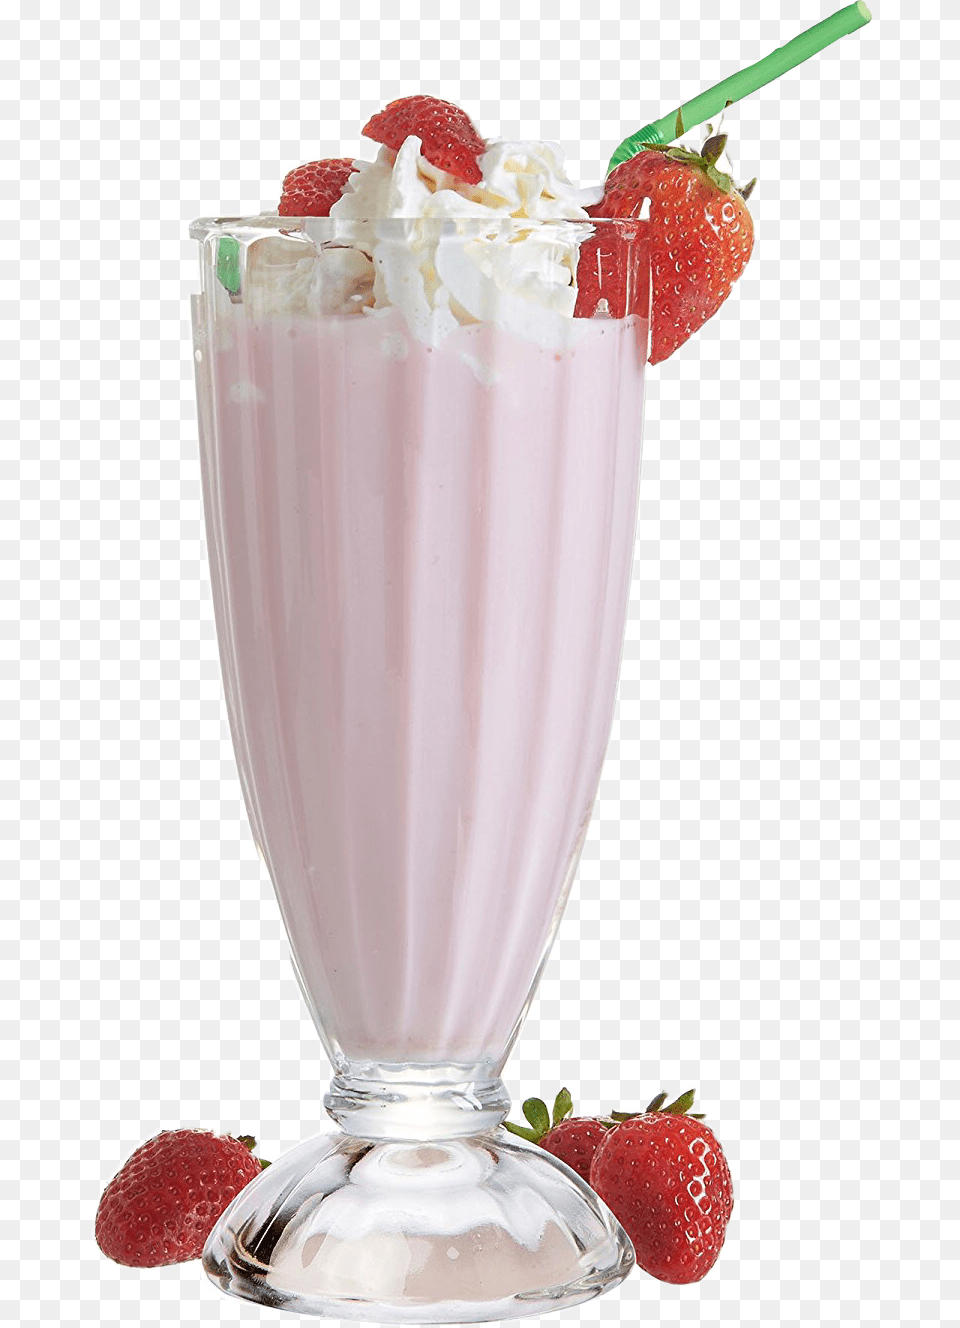 Milkshake Clipart Strawberry Milkshake Milkshake Milkshake, Juice, Beverage, Smoothie, Milk Png Image